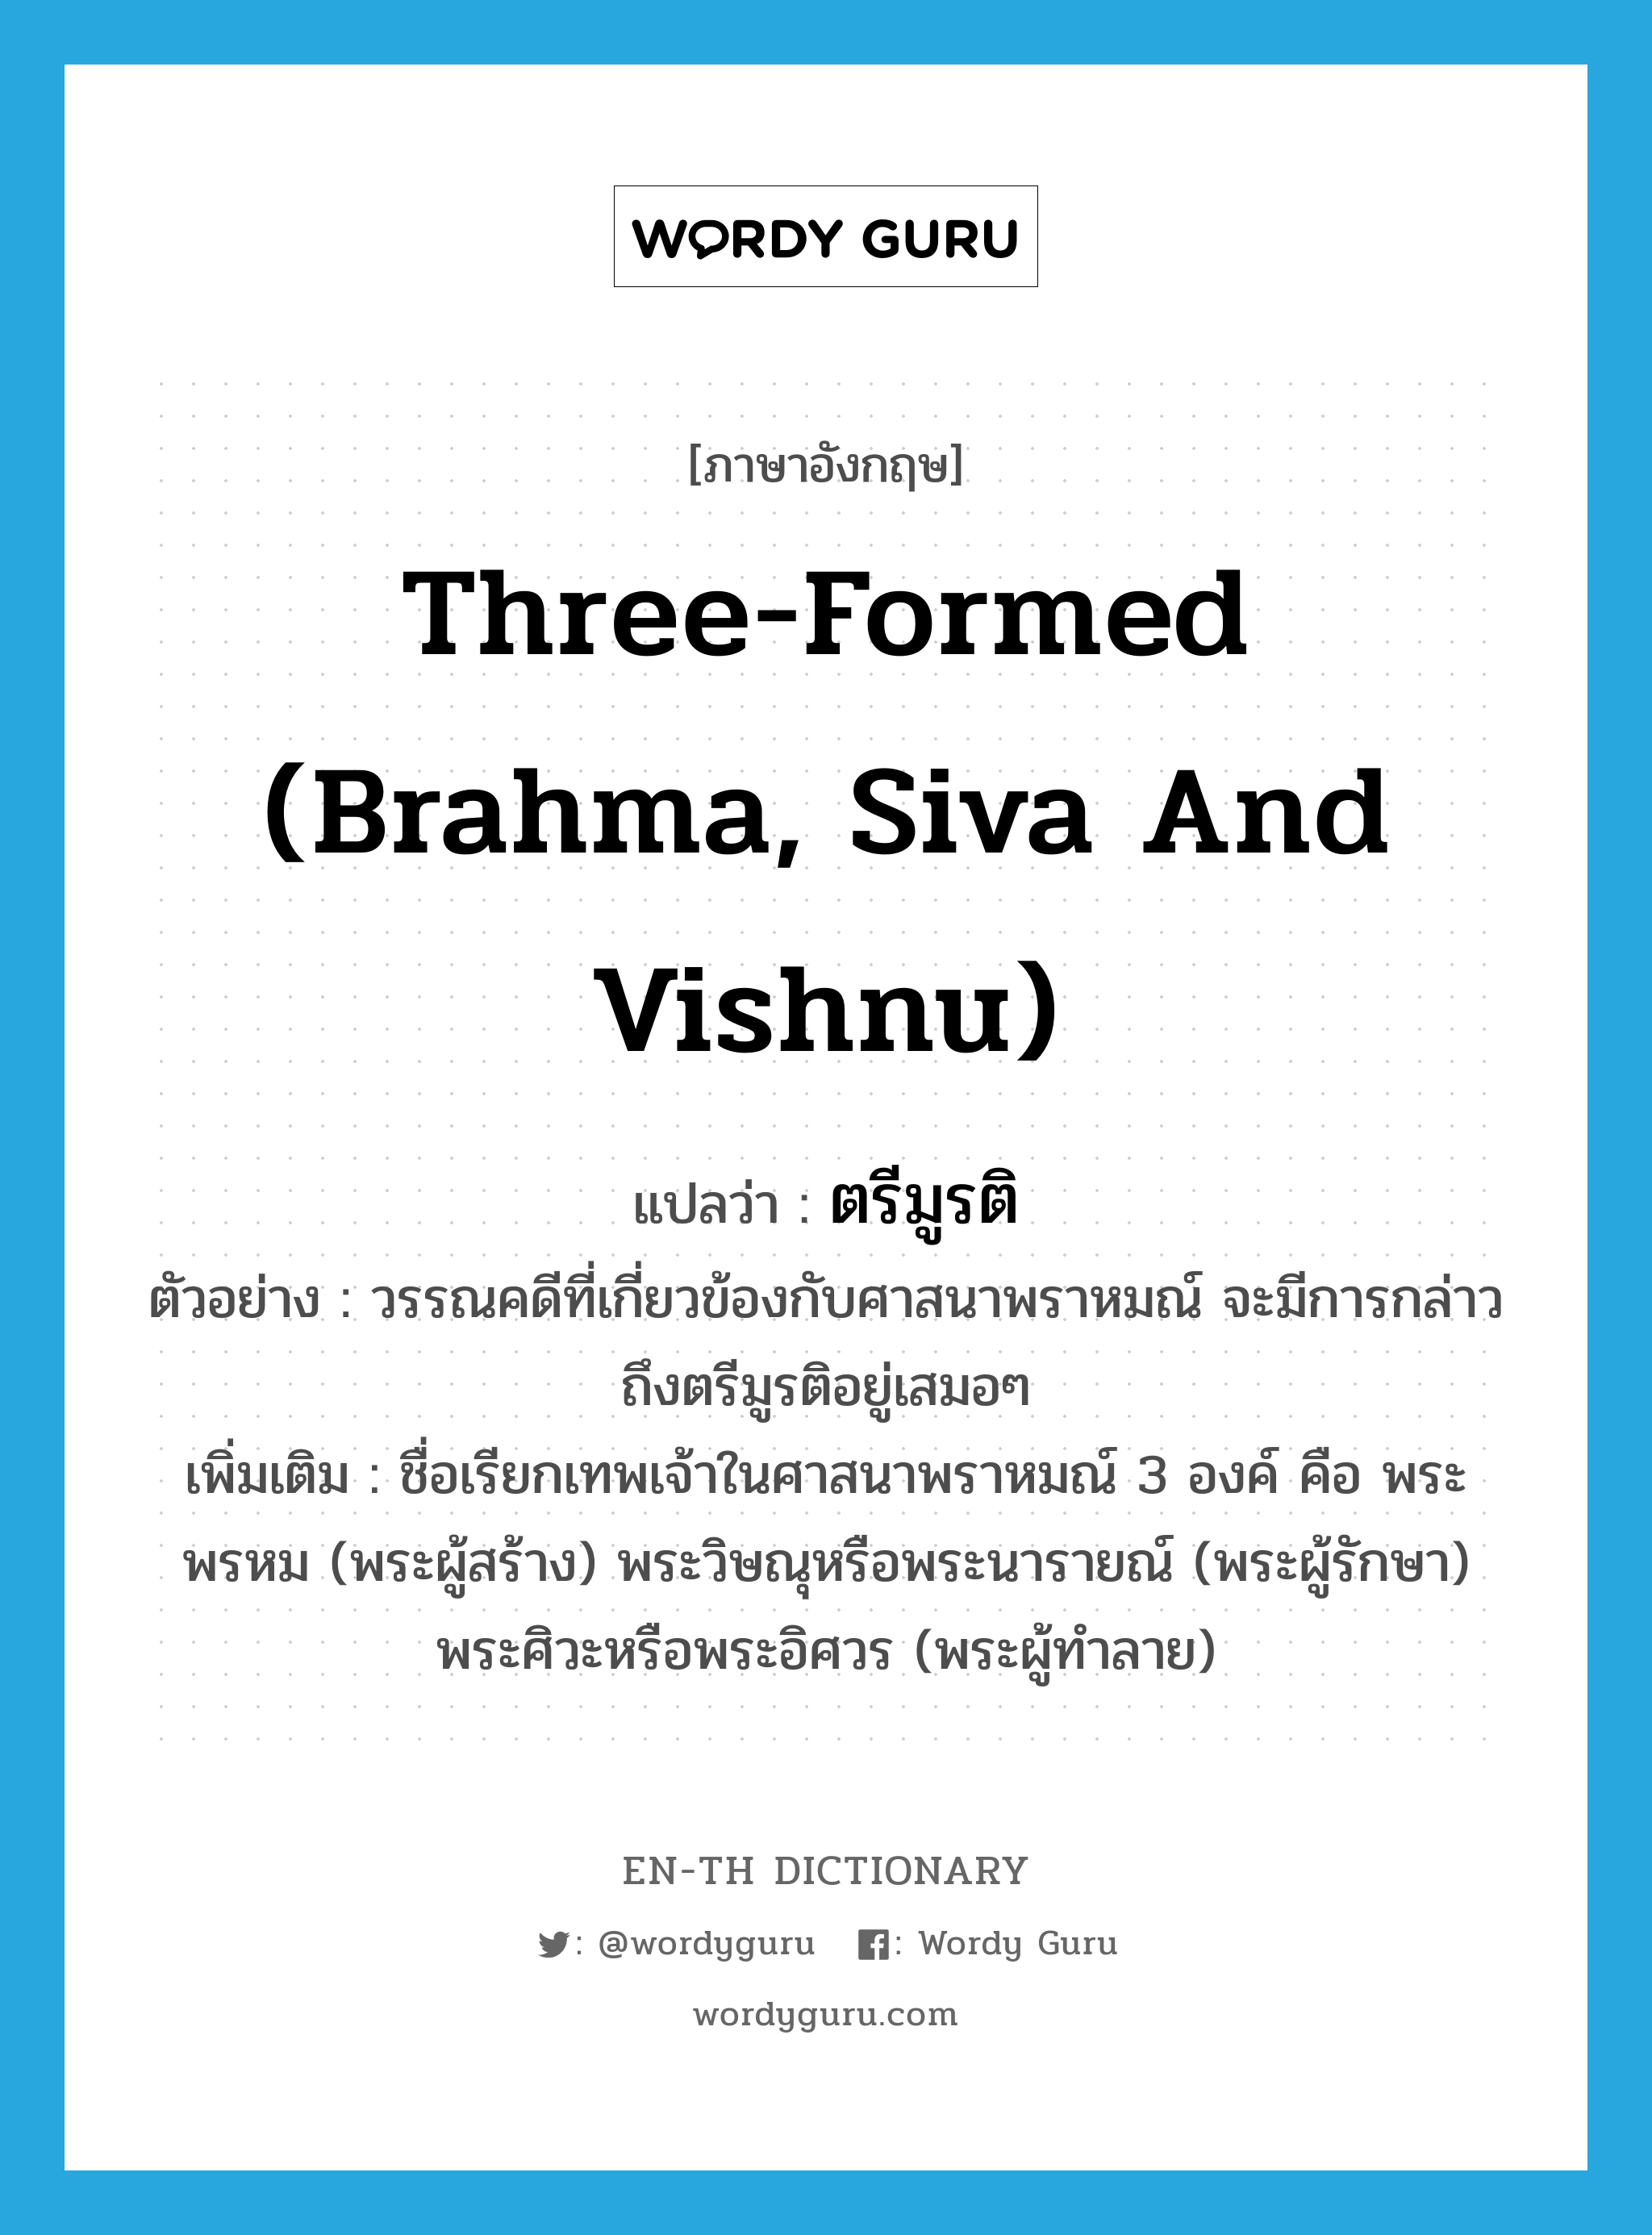 three-formed (Brahma, Siva and Vishnu) แปลว่า?, คำศัพท์ภาษาอังกฤษ three-formed (Brahma, Siva and Vishnu) แปลว่า ตรีมูรติ ประเภท N ตัวอย่าง วรรณคดีที่เกี่ยวข้องกับศาสนาพราหมณ์ จะมีการกล่าวถึงตรีมูรติอยู่เสมอๆ เพิ่มเติม ชื่อเรียกเทพเจ้าในศาสนาพราหมณ์ 3 องค์ คือ พระพรหม (พระผู้สร้าง) พระวิษณุหรือพระนารายณ์ (พระผู้รักษา) พระศิวะหรือพระอิศวร (พระผู้ทำลาย) หมวด N